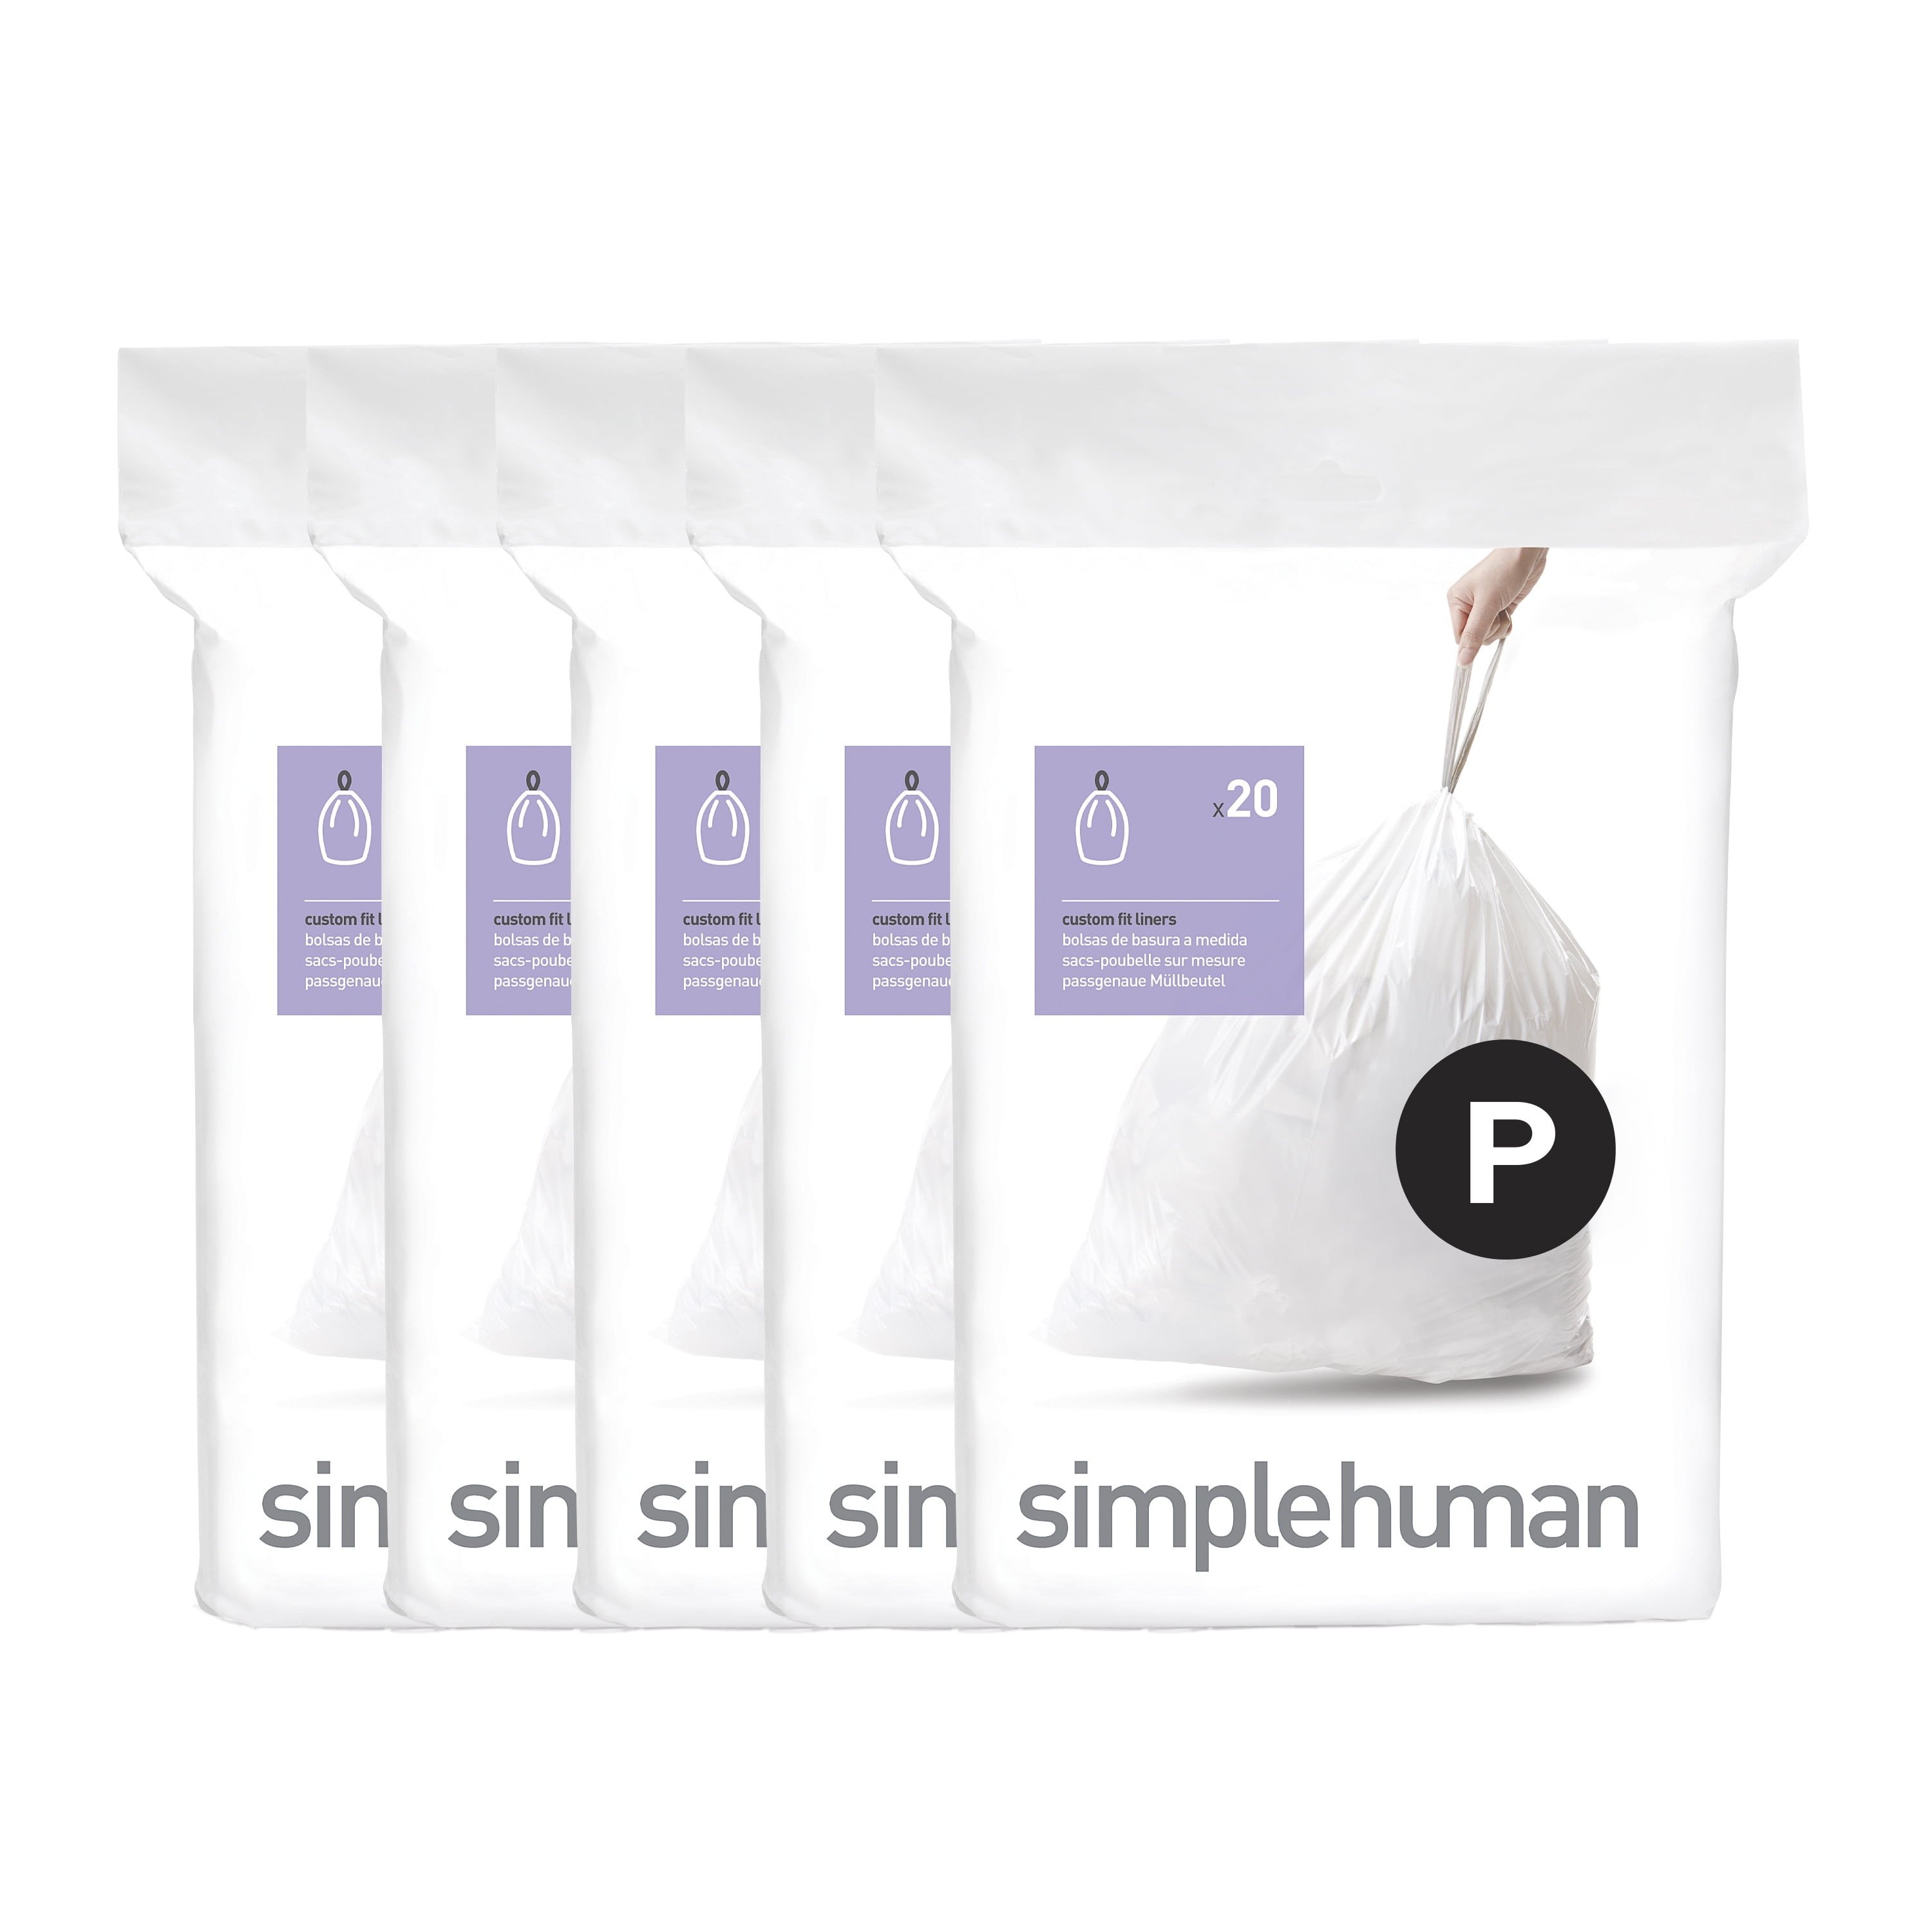  simplehuman Code R Custom Fit Drawstring Trash Bags in  Dispenser Packs, 60 Count, 10 Liter / 2.6 Gallon, White : Health & Household